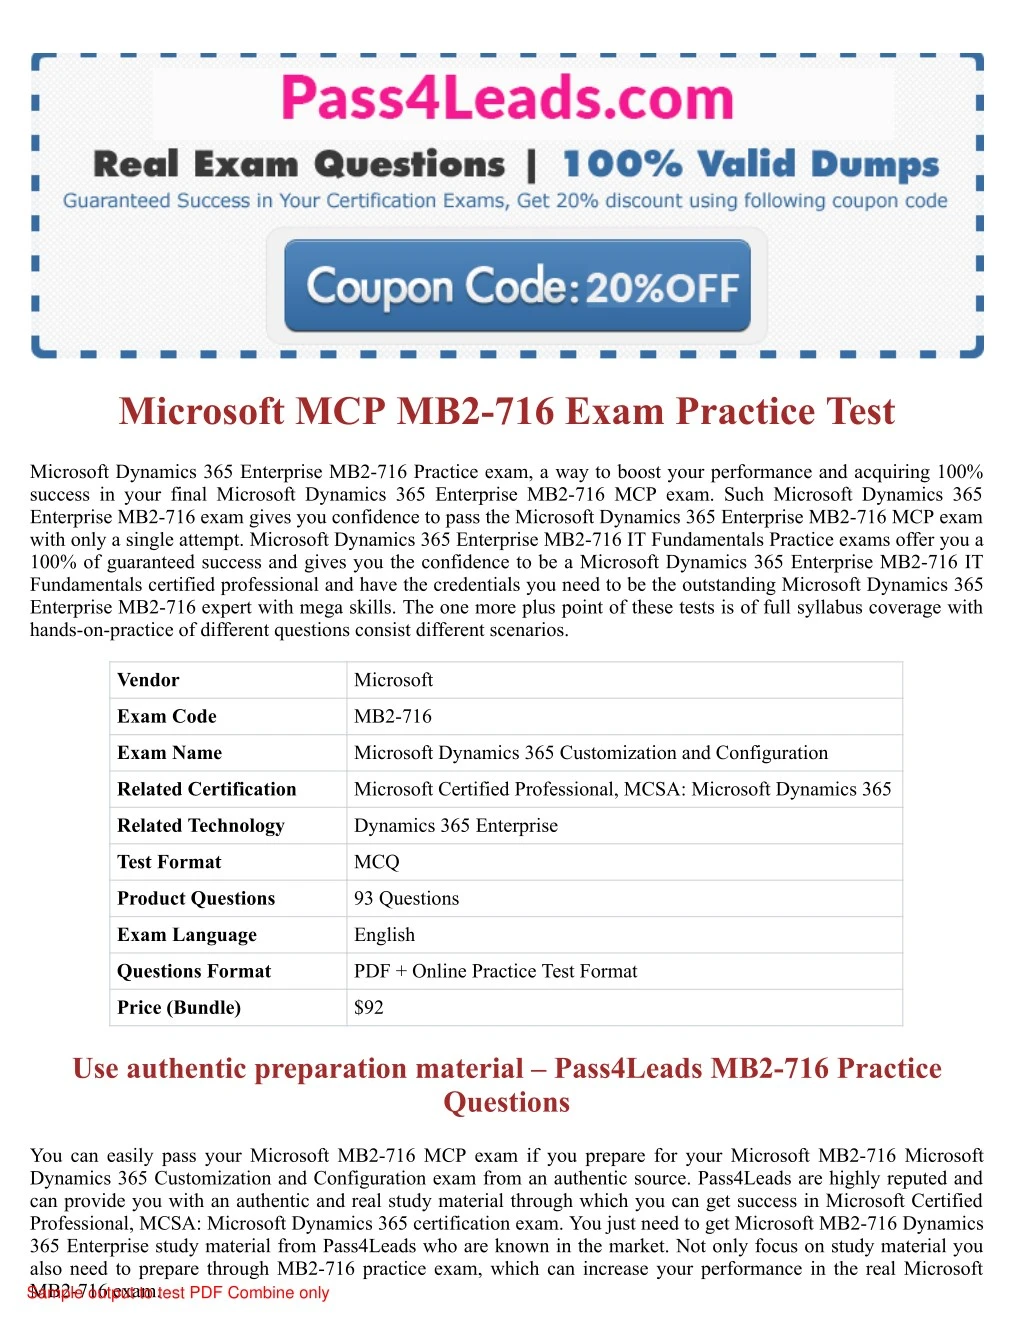 microsoft mcp mb2 716 exam practice test